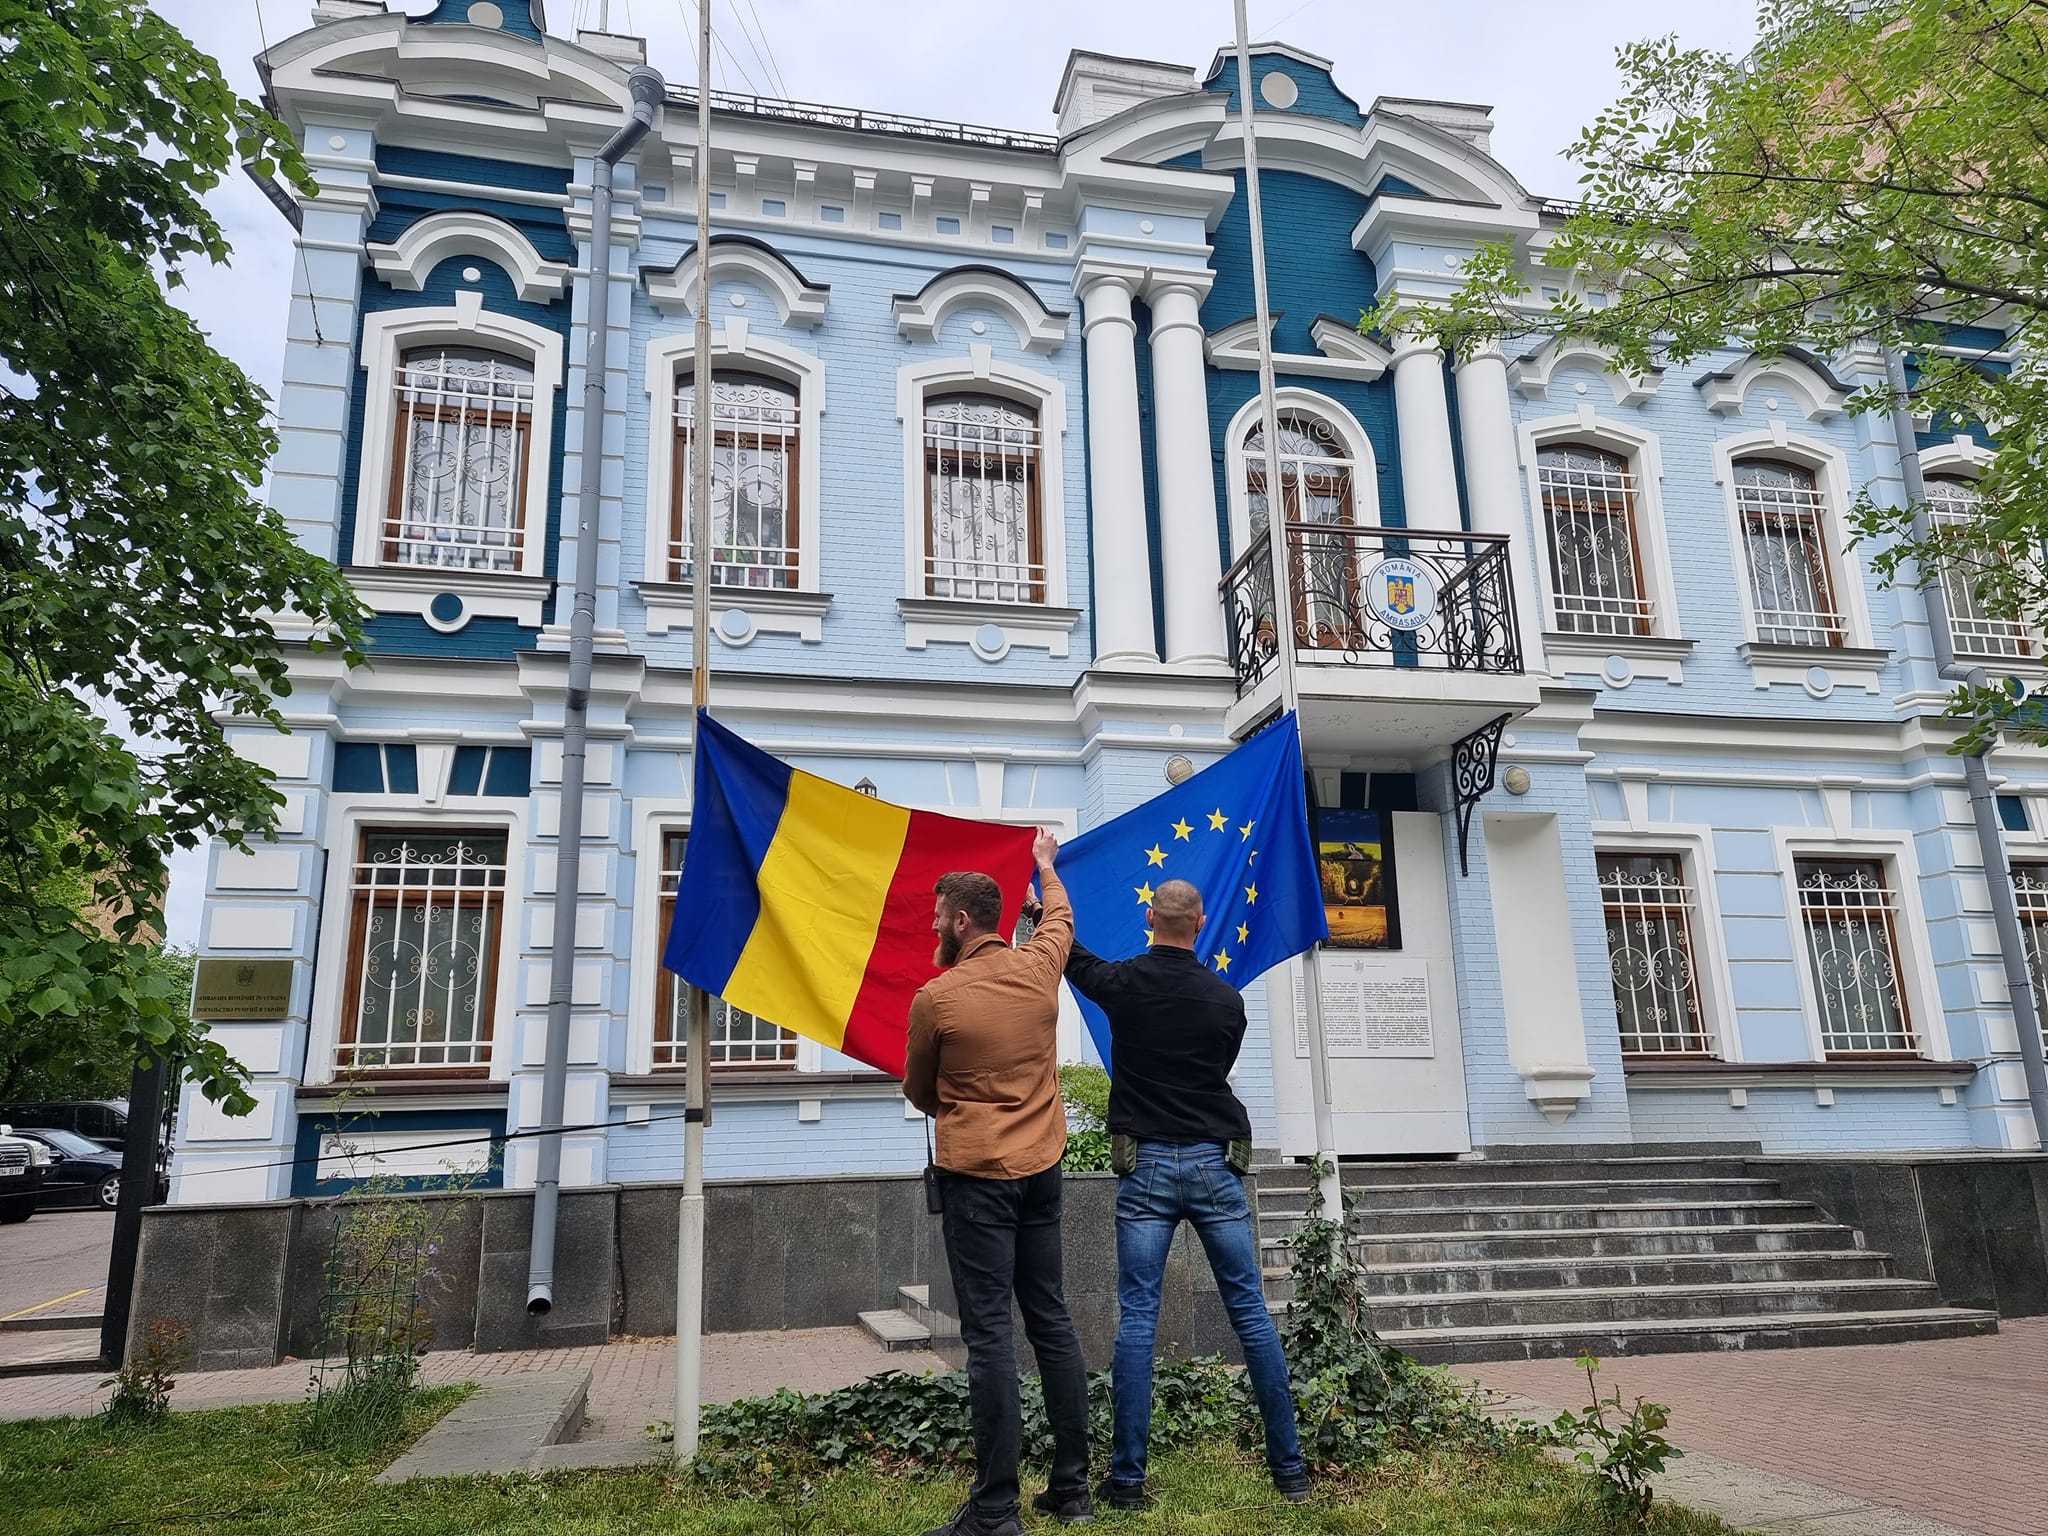 Ce conțin plicurile suspecte de la ambasada Ucrainei din România